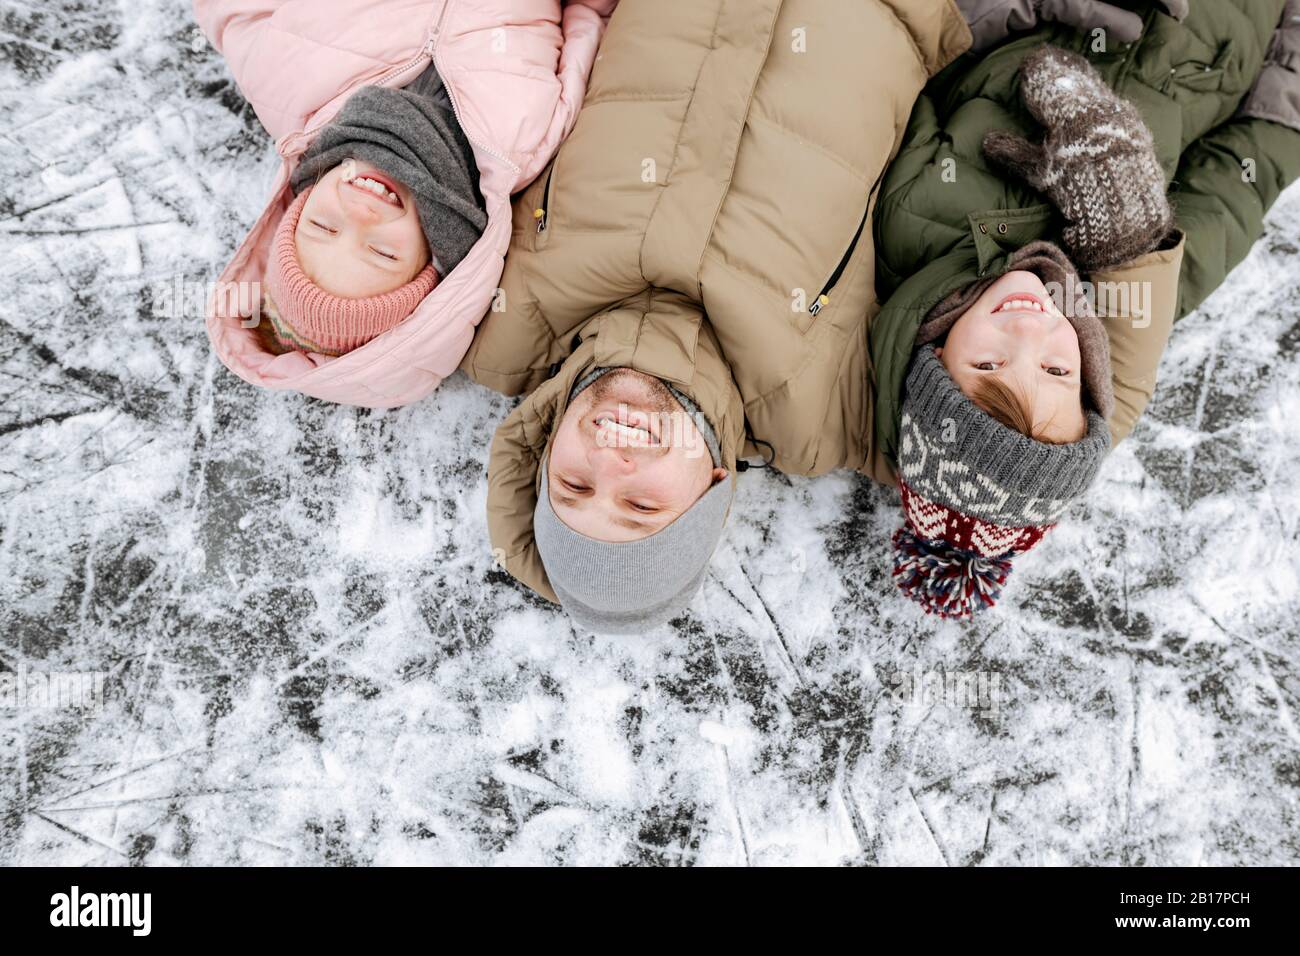 Retrato familiar de padre y dos niños tumbados sobre hielo en invierno Foto de stock